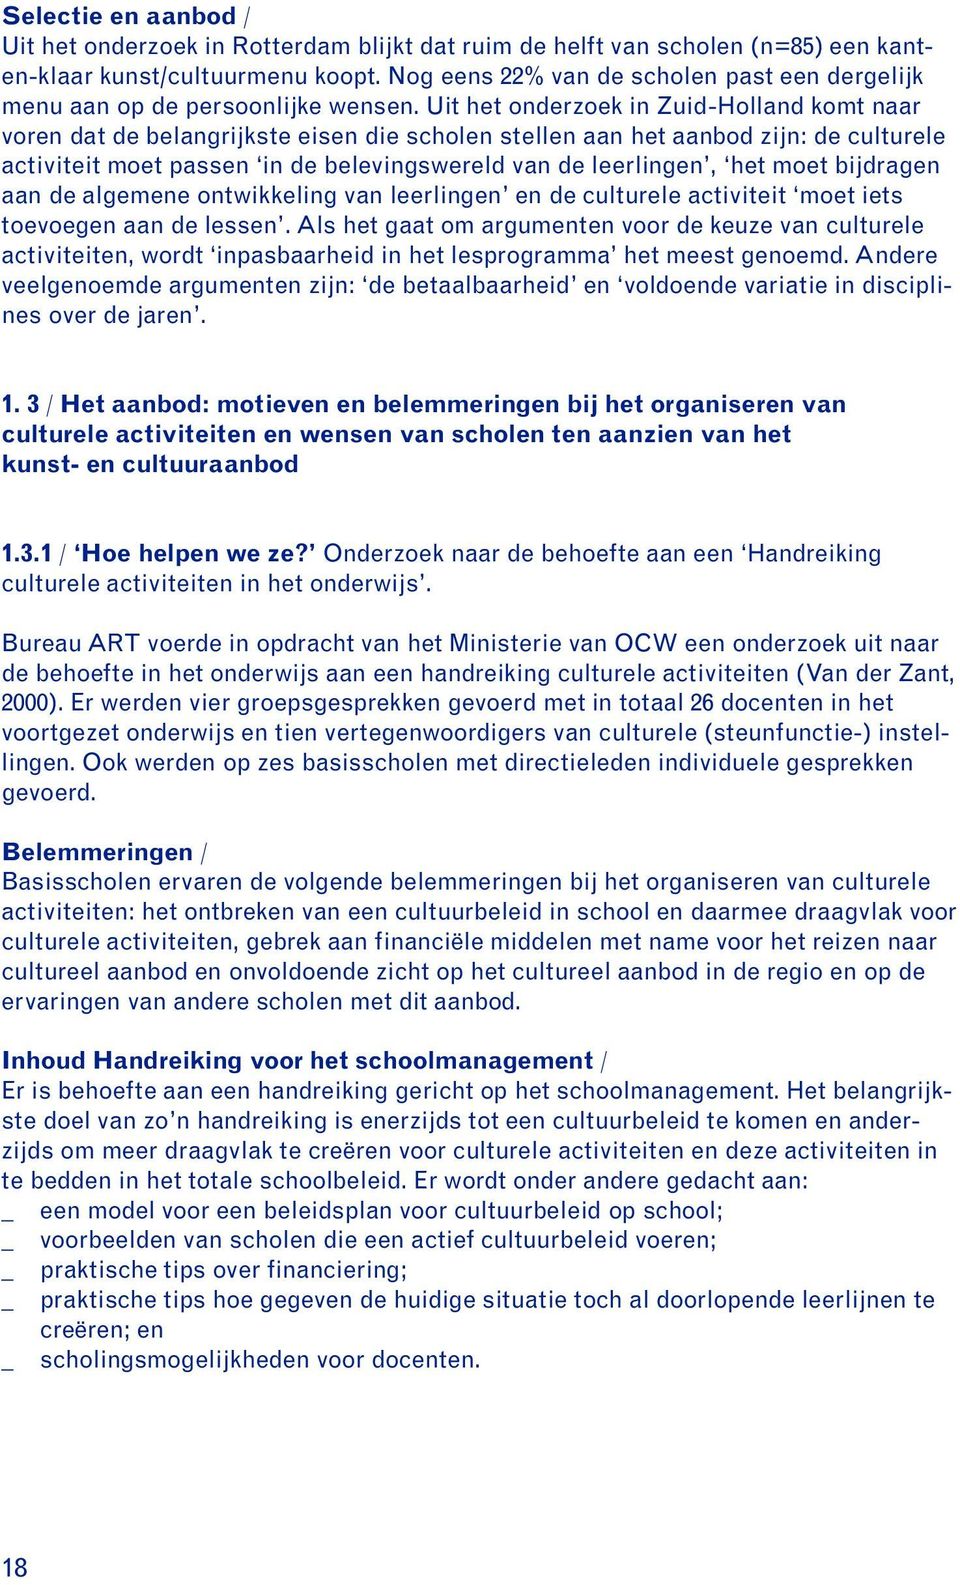 Uit het onderzoek in Zuid-Holland komt naar voren dat de belangrijkste eisen die scholen stellen aan het aanbod zijn: de culturele activiteit moet passen in de belevingswereld van de leerlingen, het